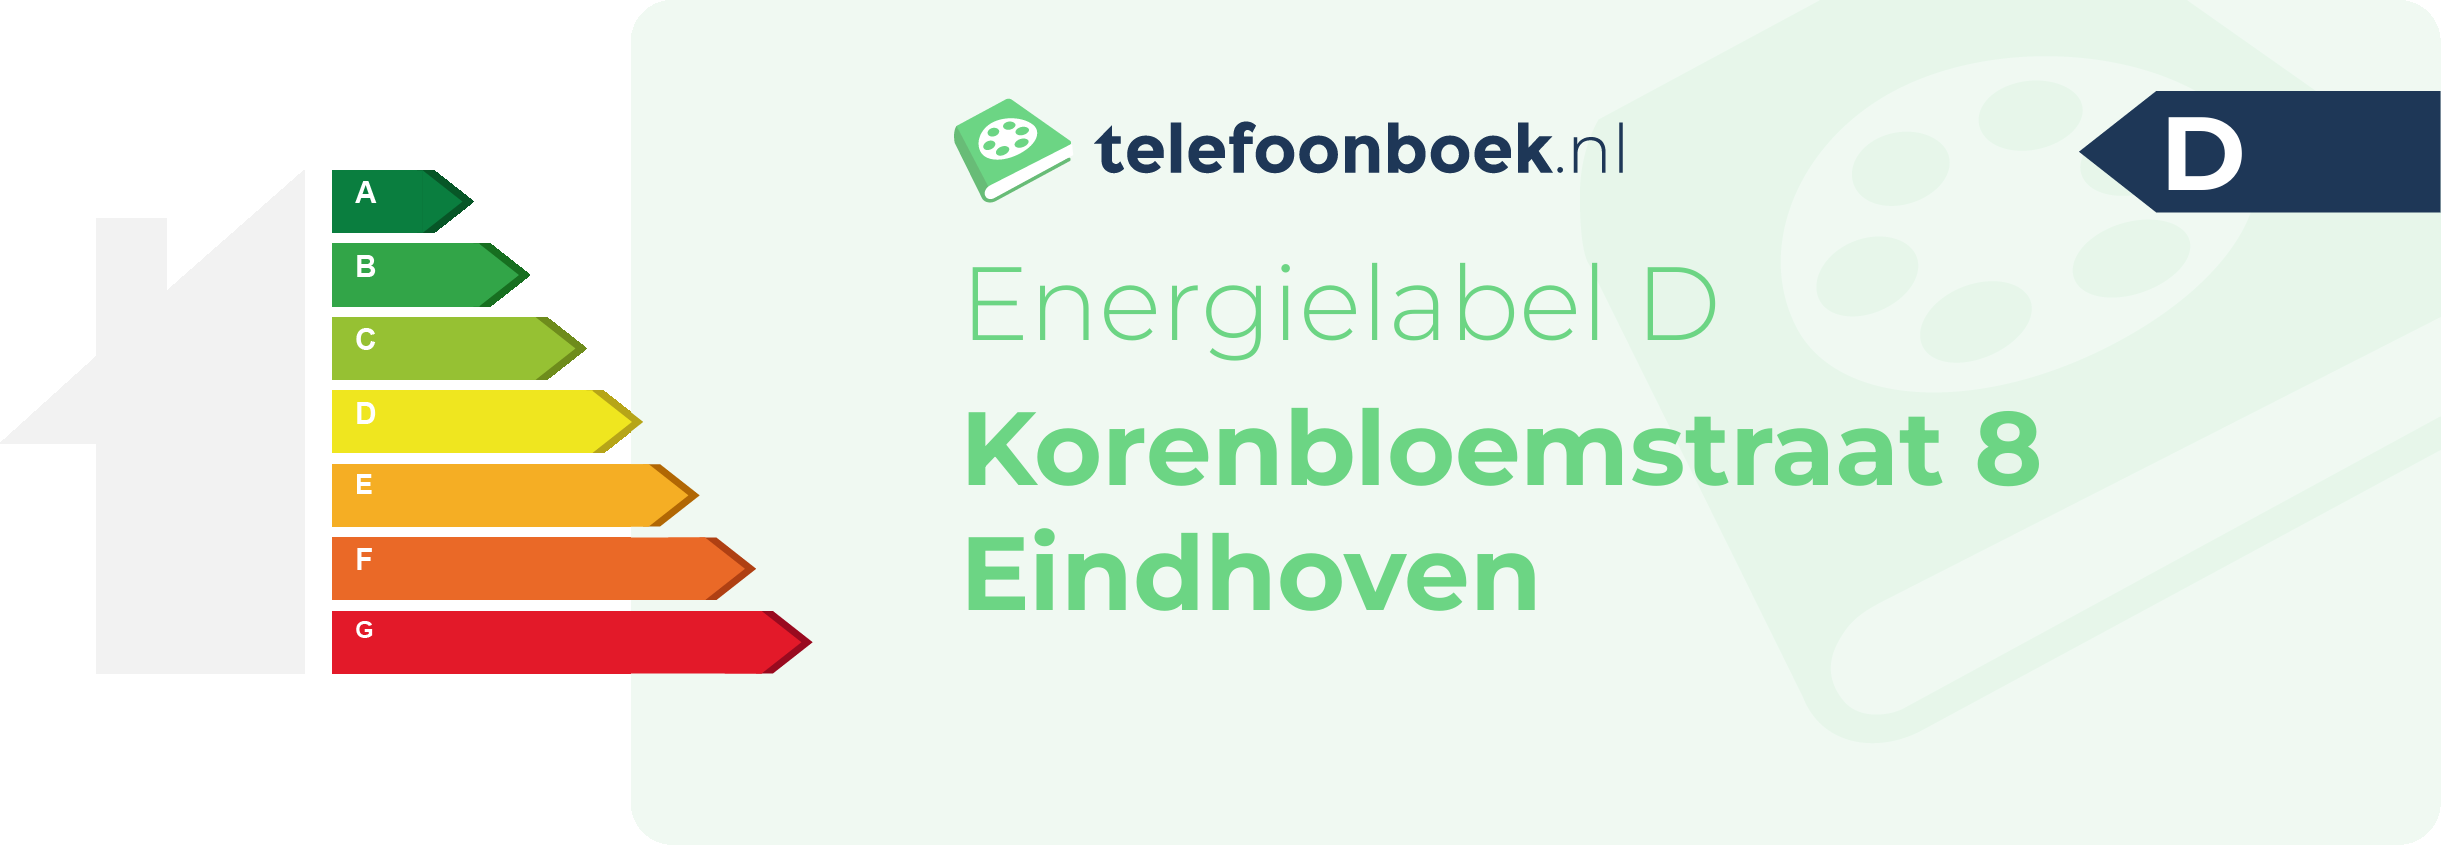 Energielabel Korenbloemstraat 8 Eindhoven